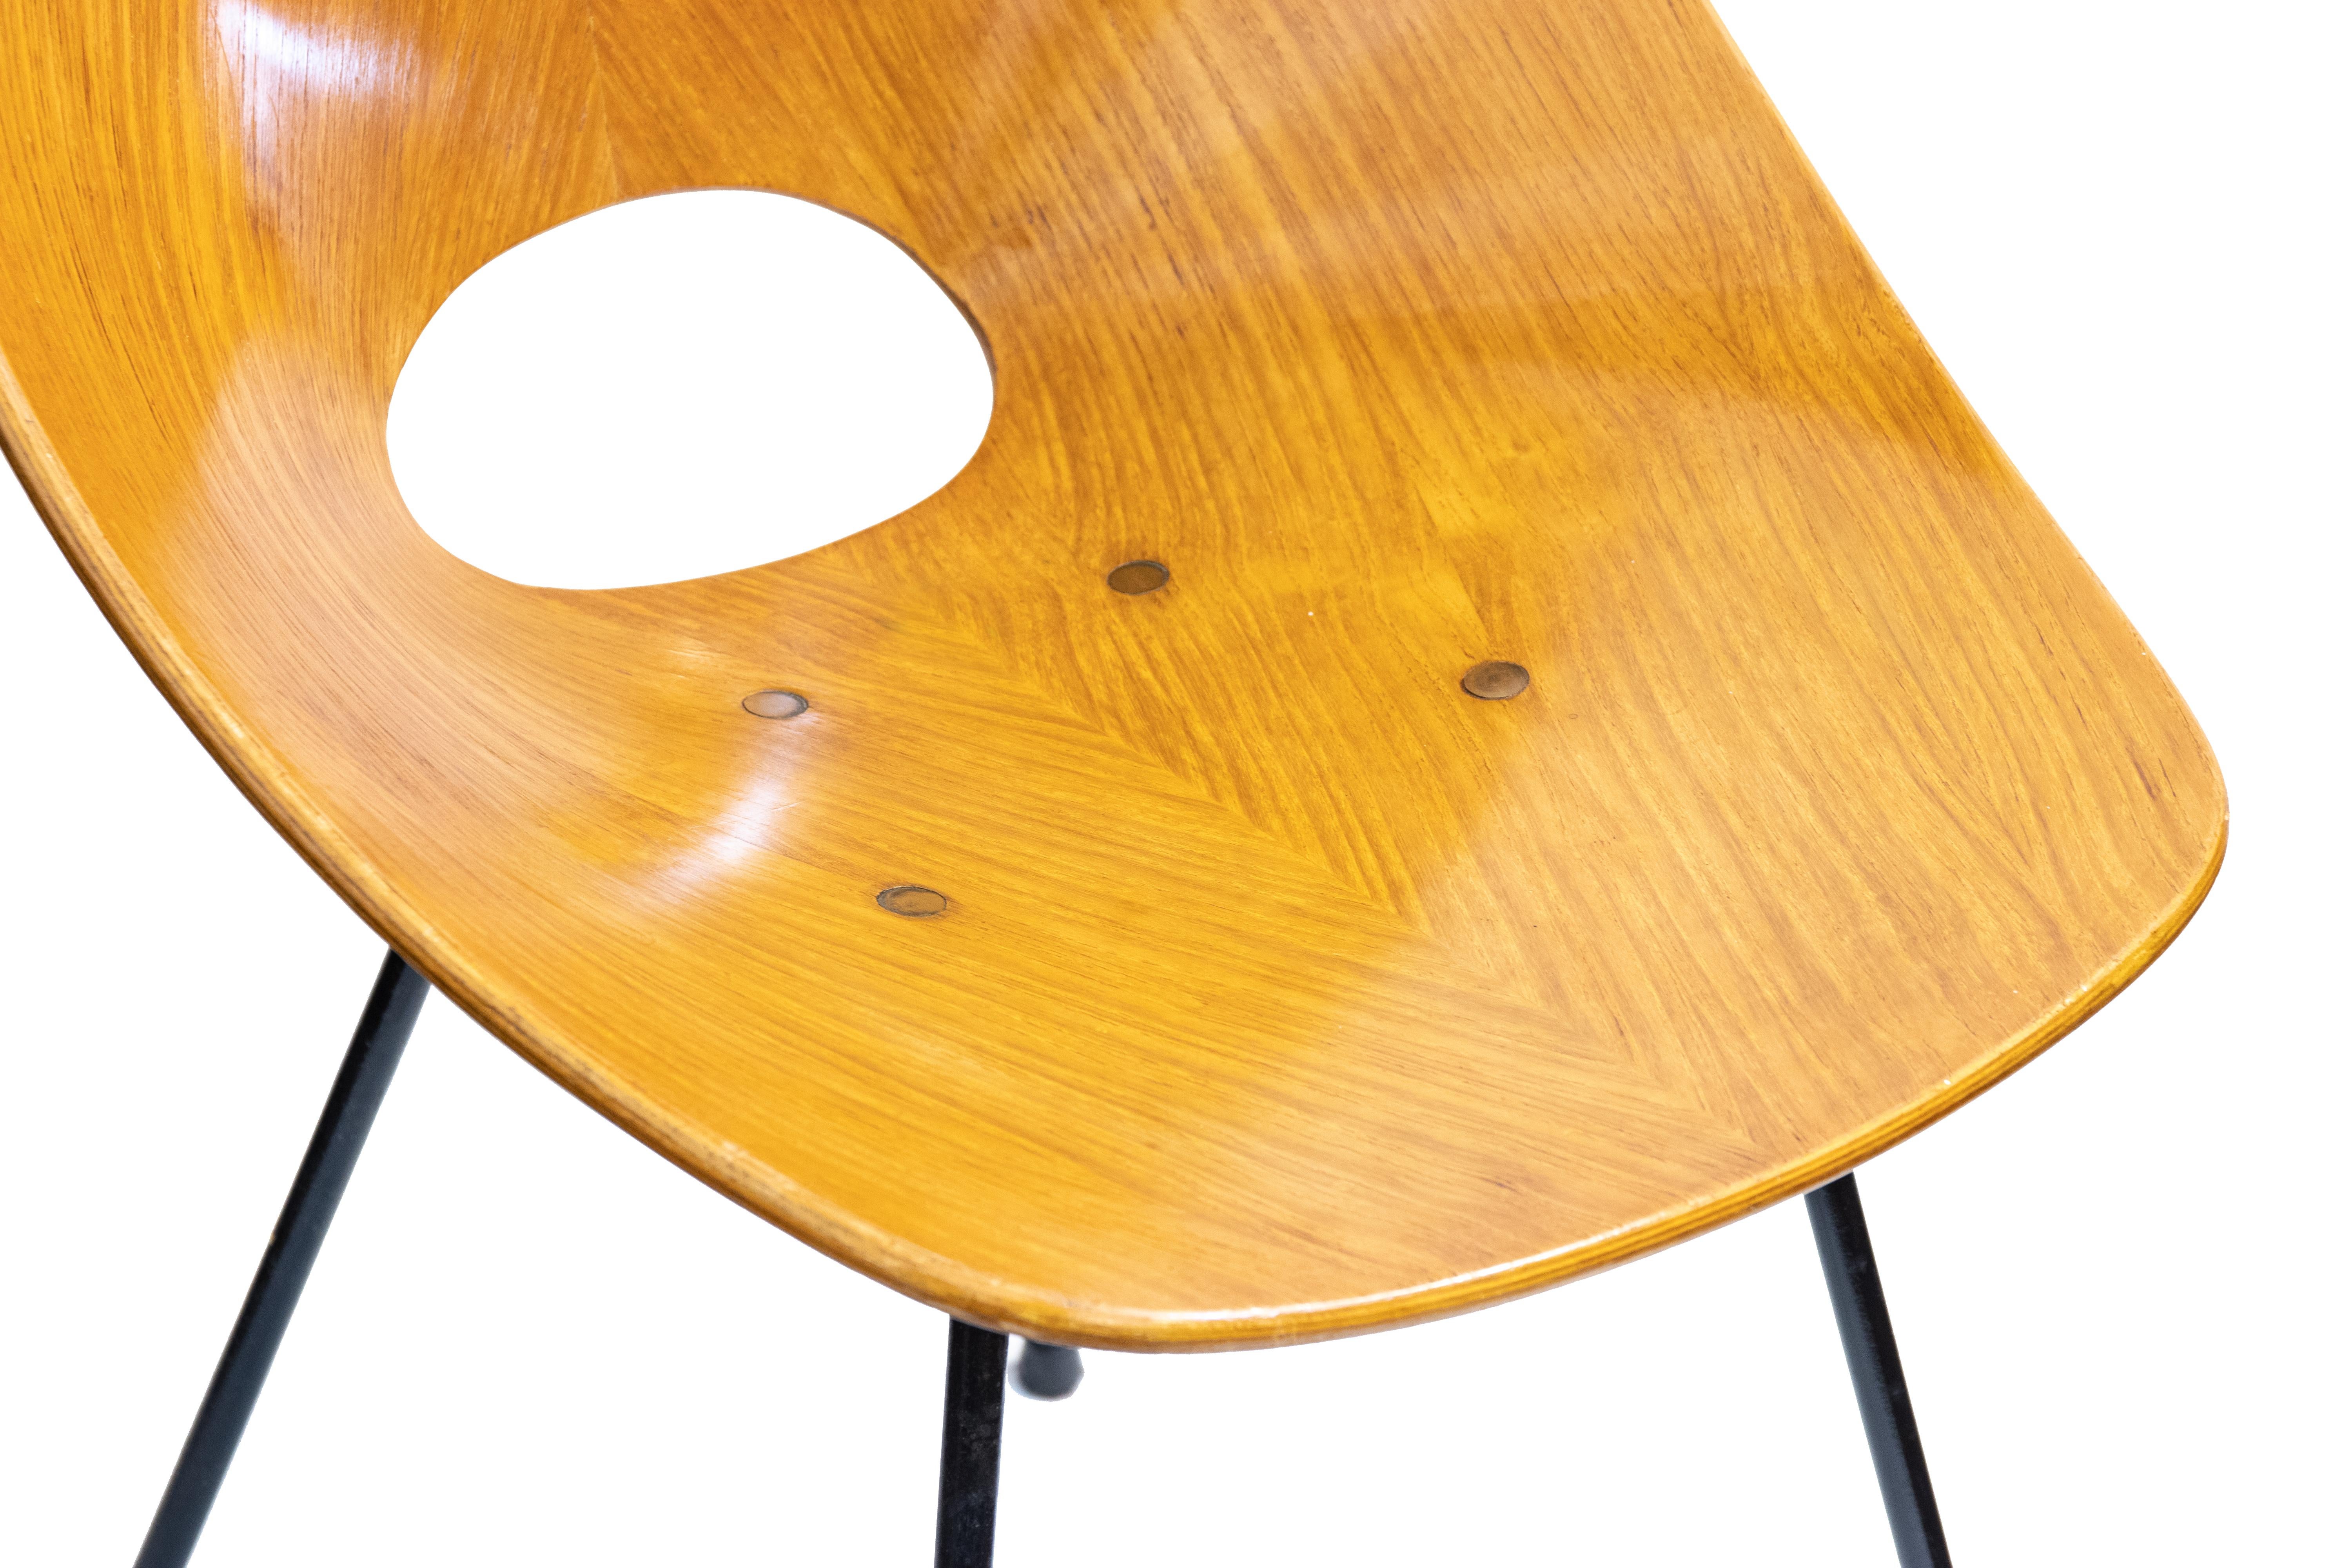 Der ikonische Stuhl Medea wurde 1955 von Vittorio Nobili für Fratelli Tagliabue entworfen und gewann im darauf folgenden Jahr (1956) den Compasso D'Oro auf der Biennale für Industriedesign in Mailand. Gebogenes Sperrholz mit ebonisierter Rückseite